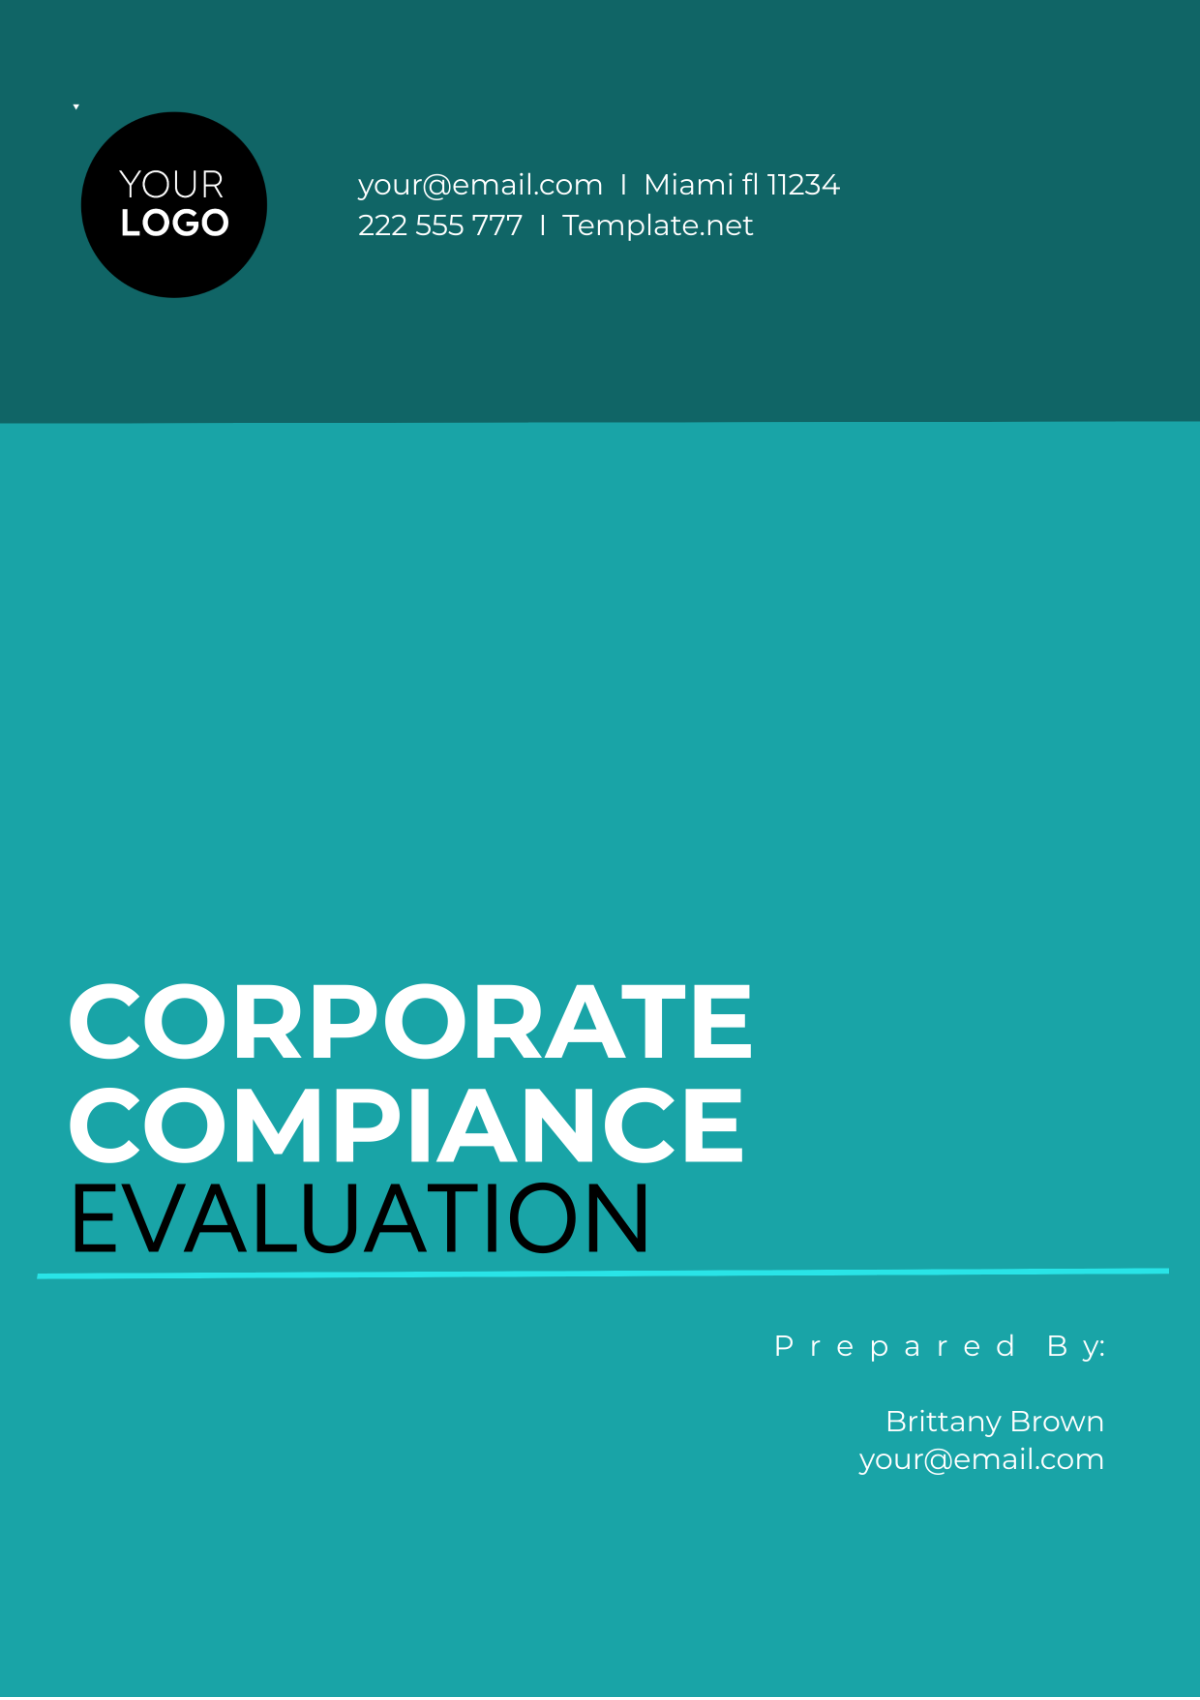 Evaluation Of Corporate Compliance Template